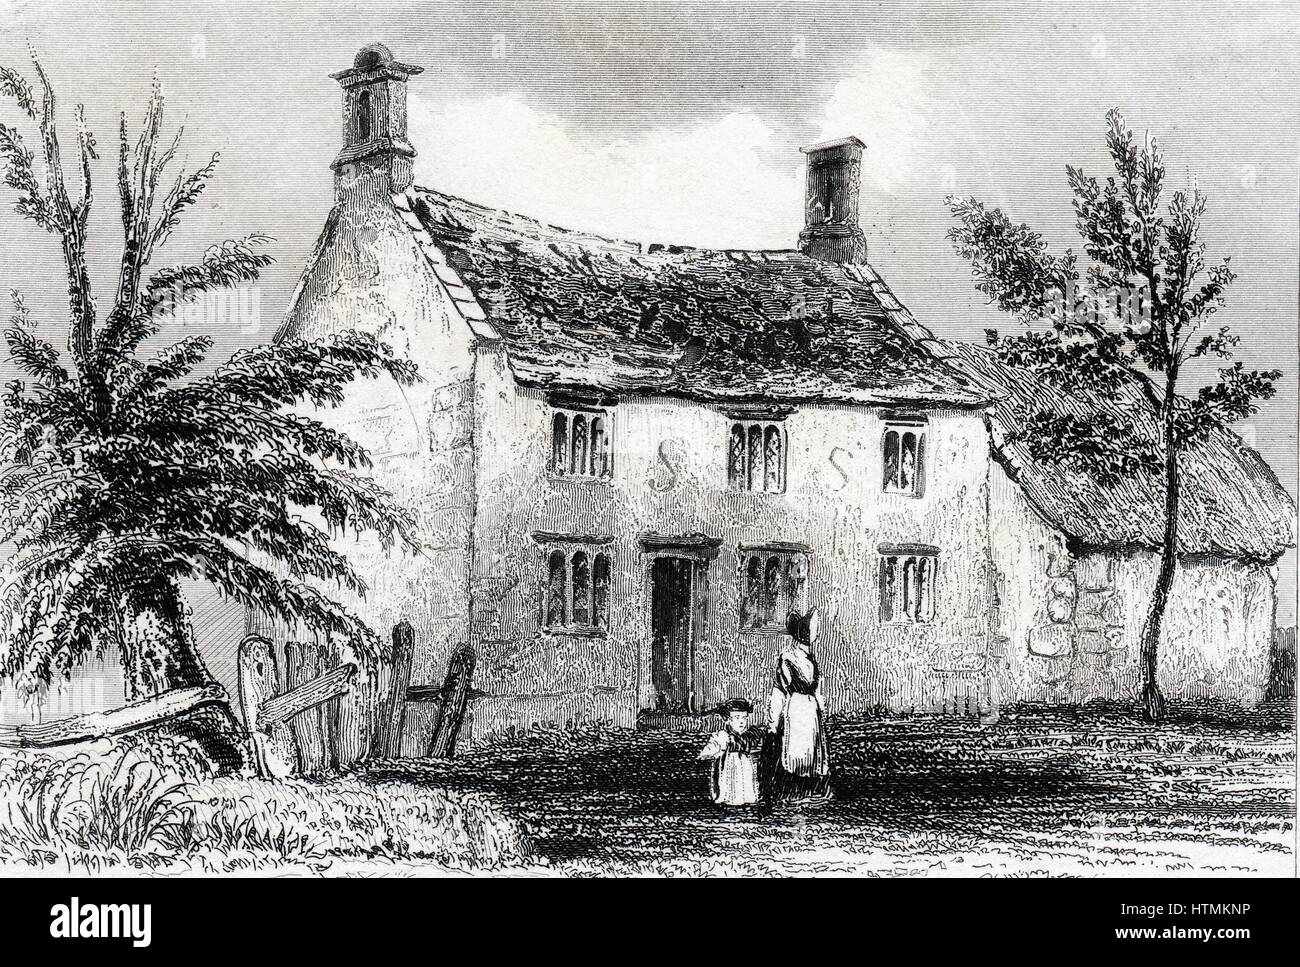 Woolsthorpe Manor, in der Nähe von Grantham, Lincolnshire, Geburtsort von Isaac Newton (1642-1727). Gravur von Dugdale "England und Wales abgegrenzt" 1840 Stockfoto